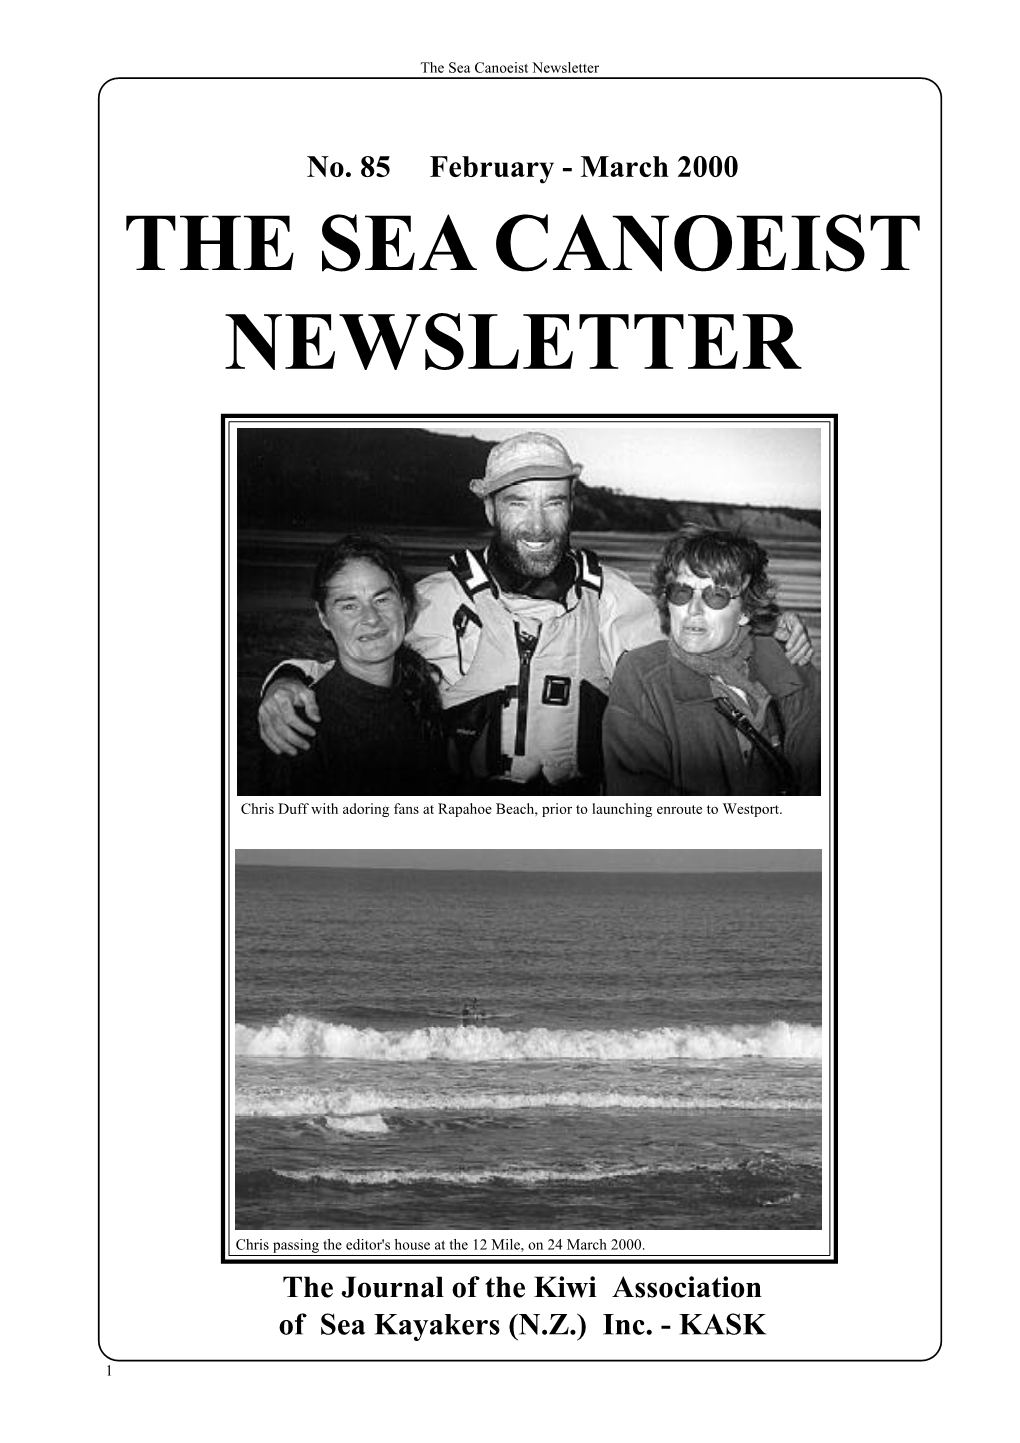 The Sea Canoeist Newsletter